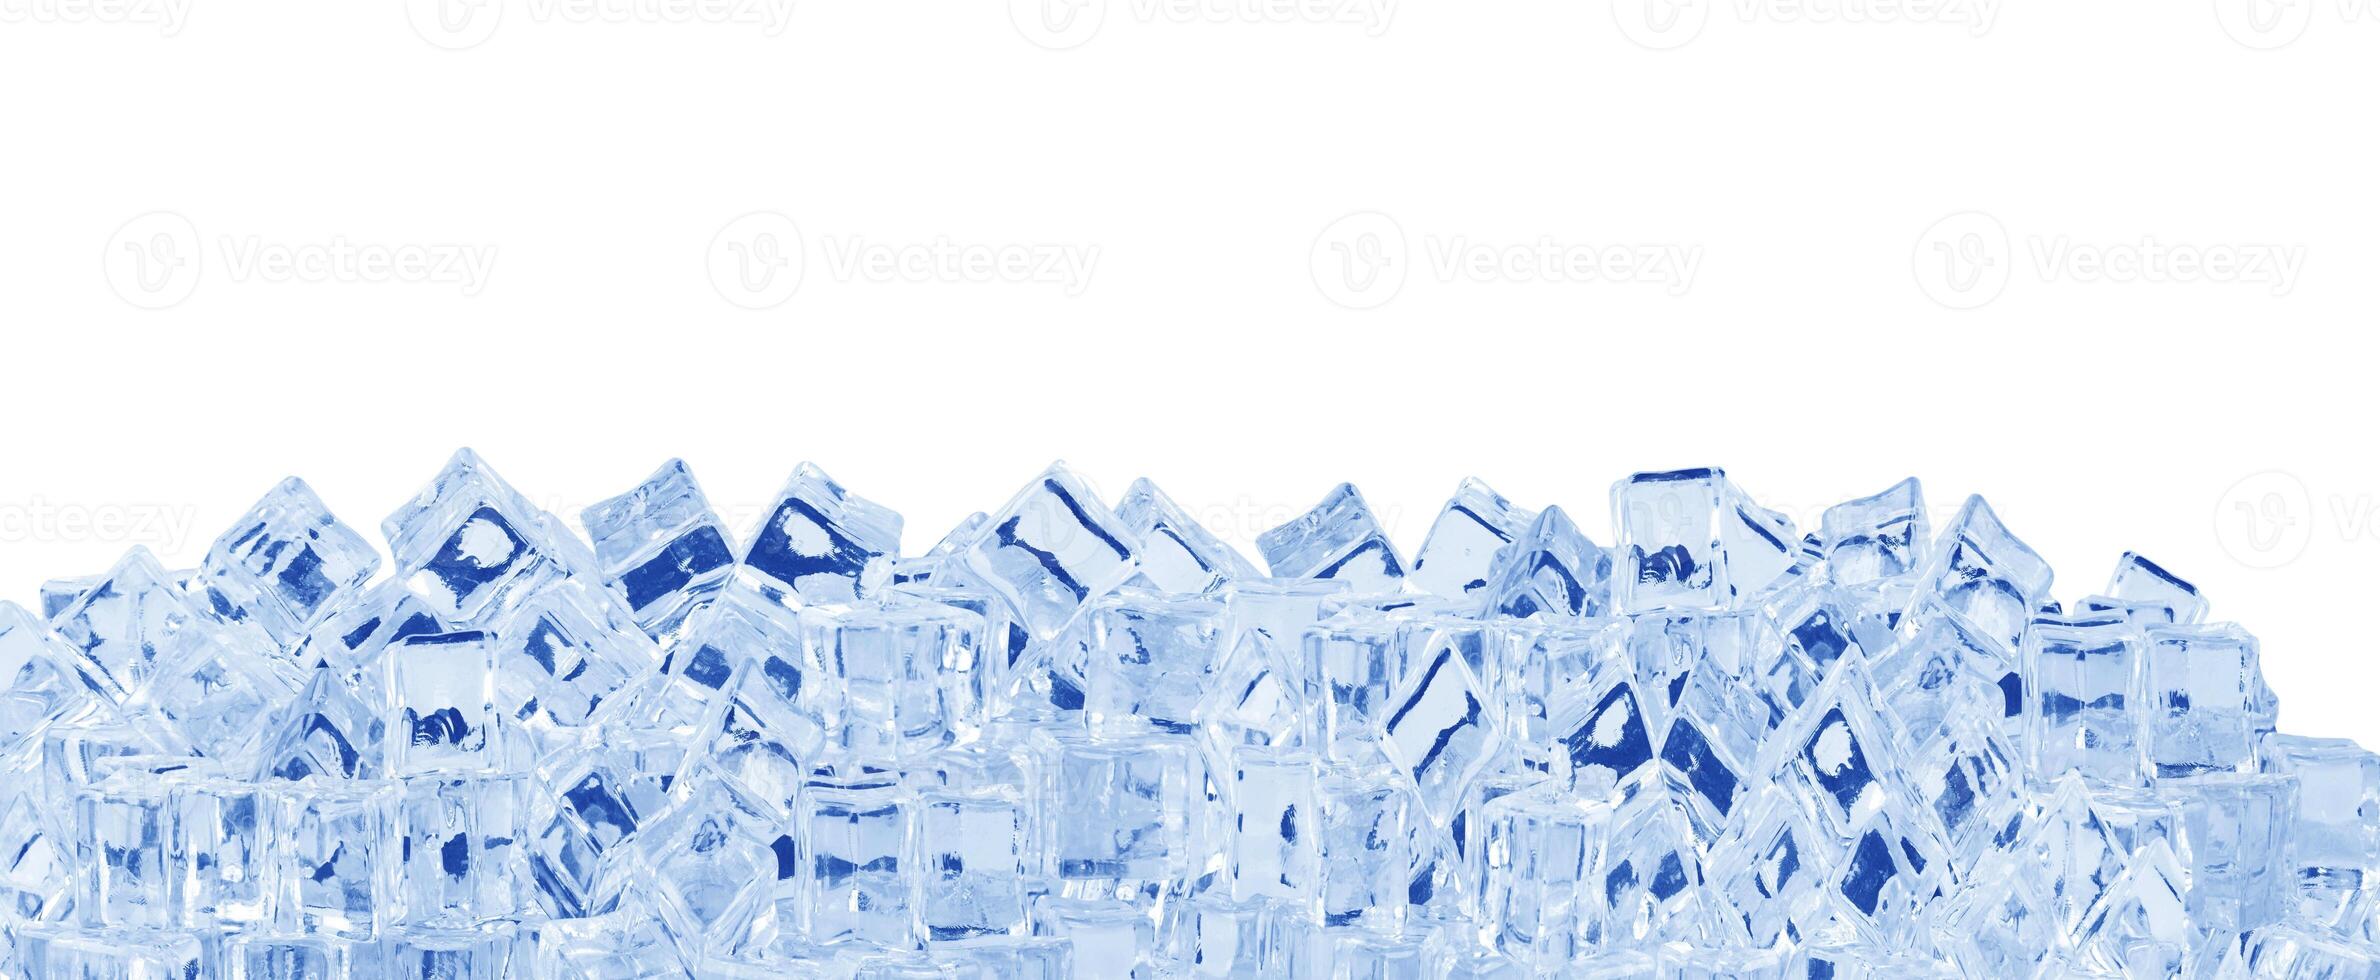 hielo cubitos en blanco foto